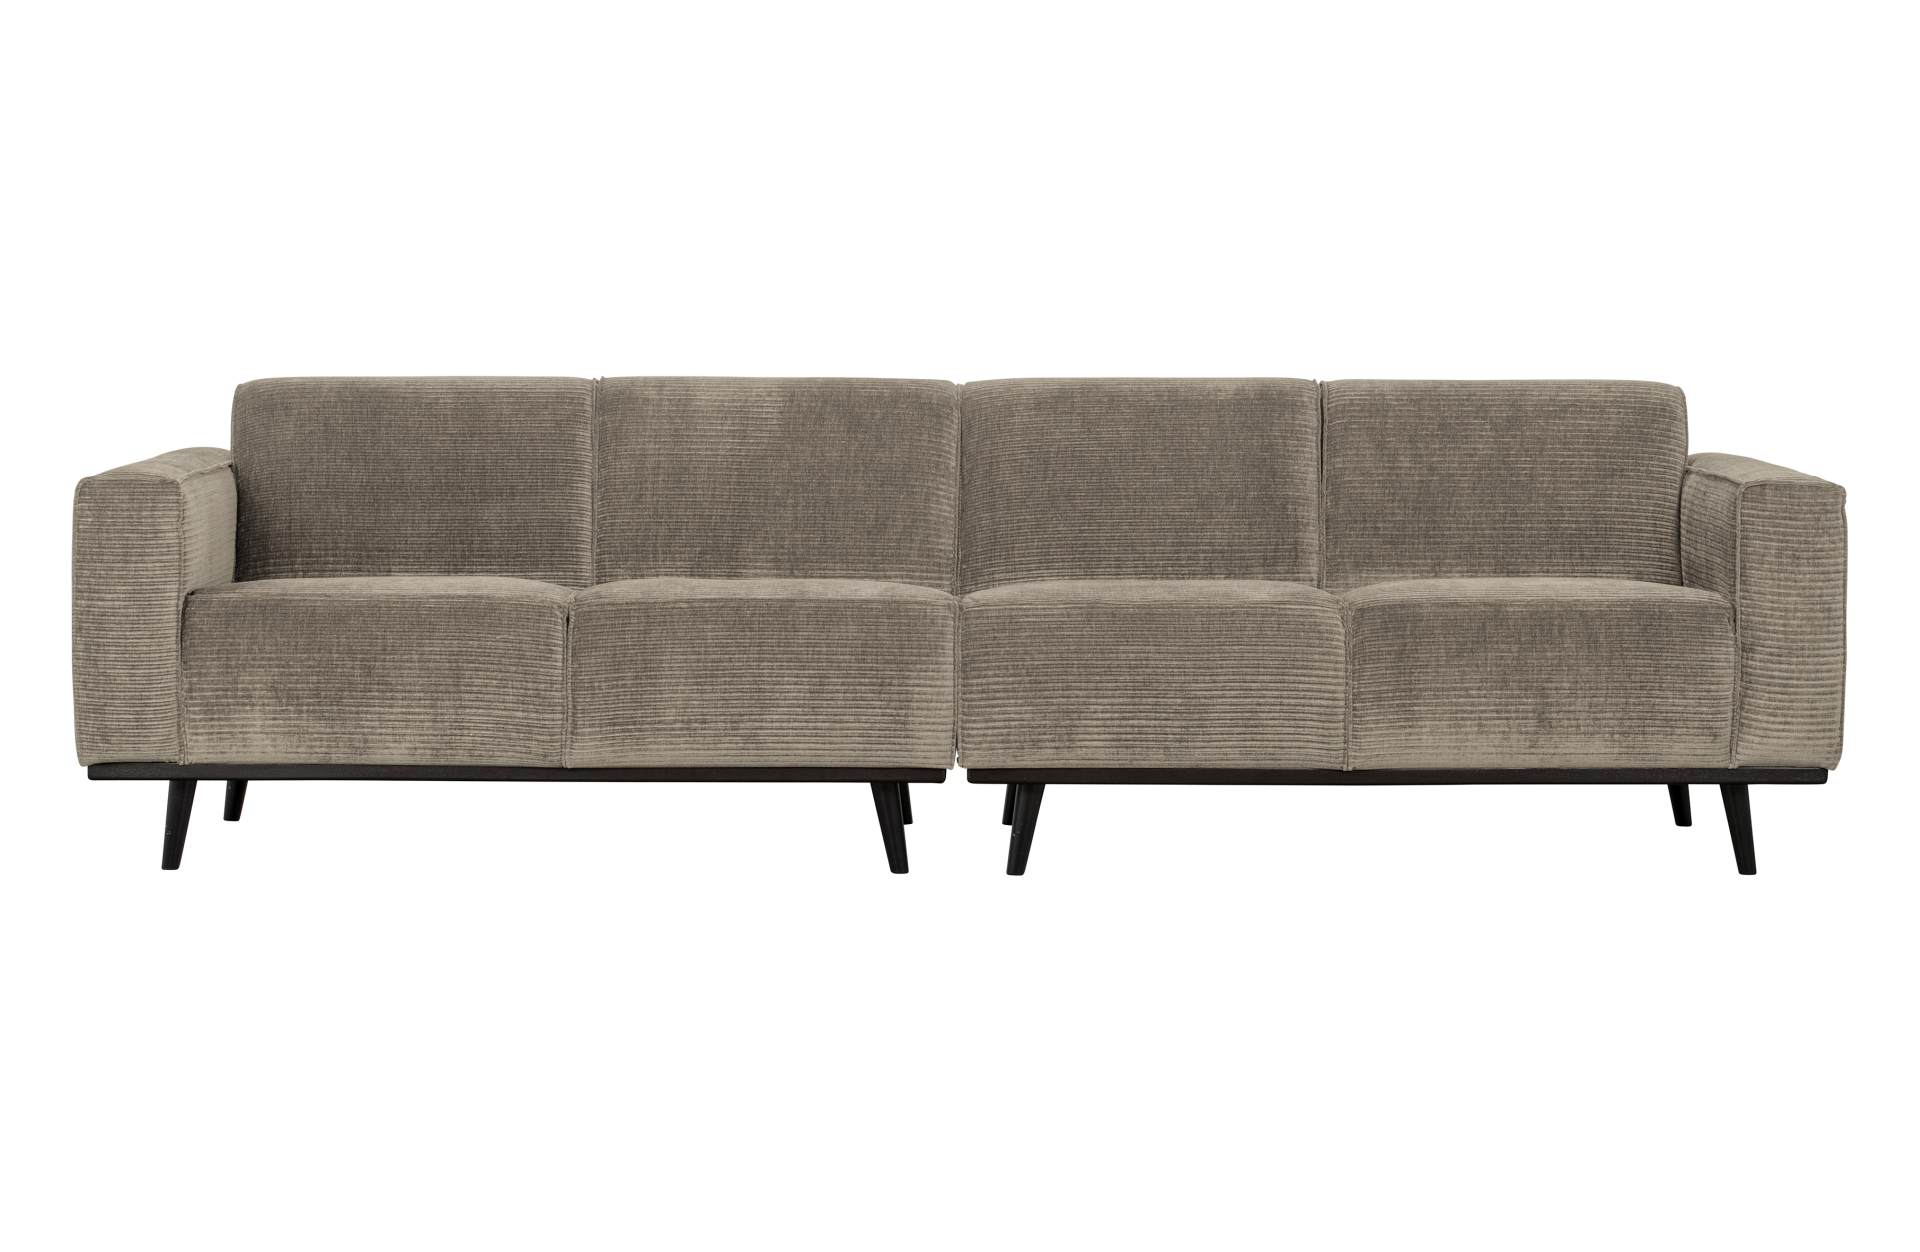 Das Sofa Statement überzeugt mit seinem modernen Design. Gefertigt wurde es aus gewebten Jacquard, welches einen Beige Farbton besitzen. Das Gestell ist aus Birkenholz und hat eine schwarze Farbe. Das Sofa hat eine Breite von 280 cm.